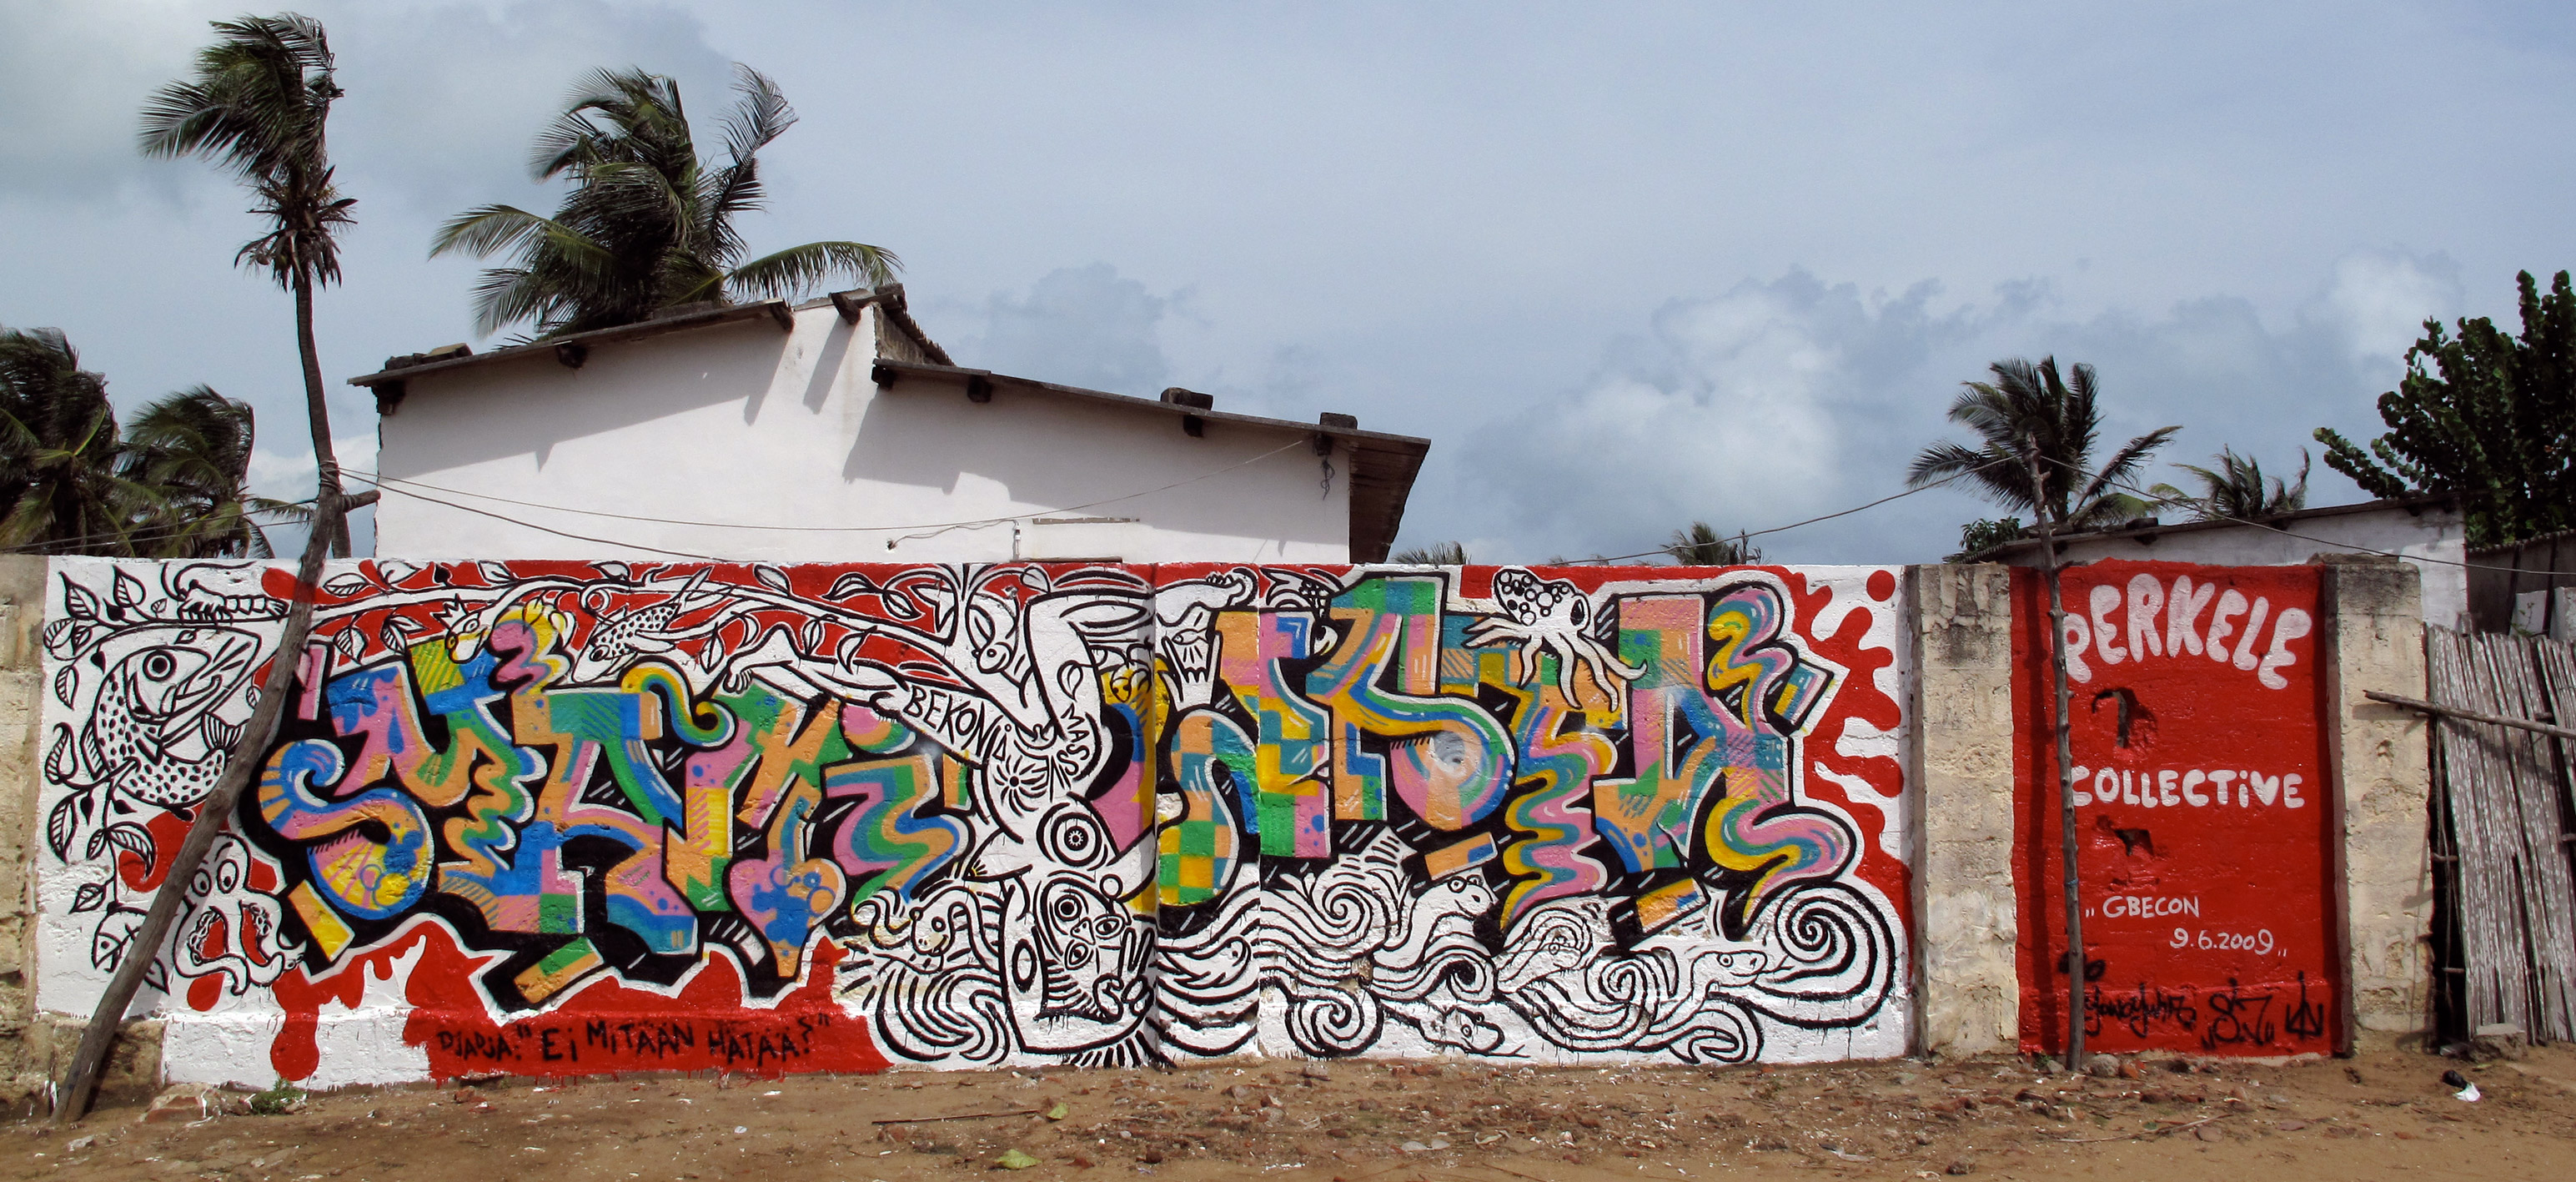 coll-mami-wata-graffiti-mural-50cmt.jpg